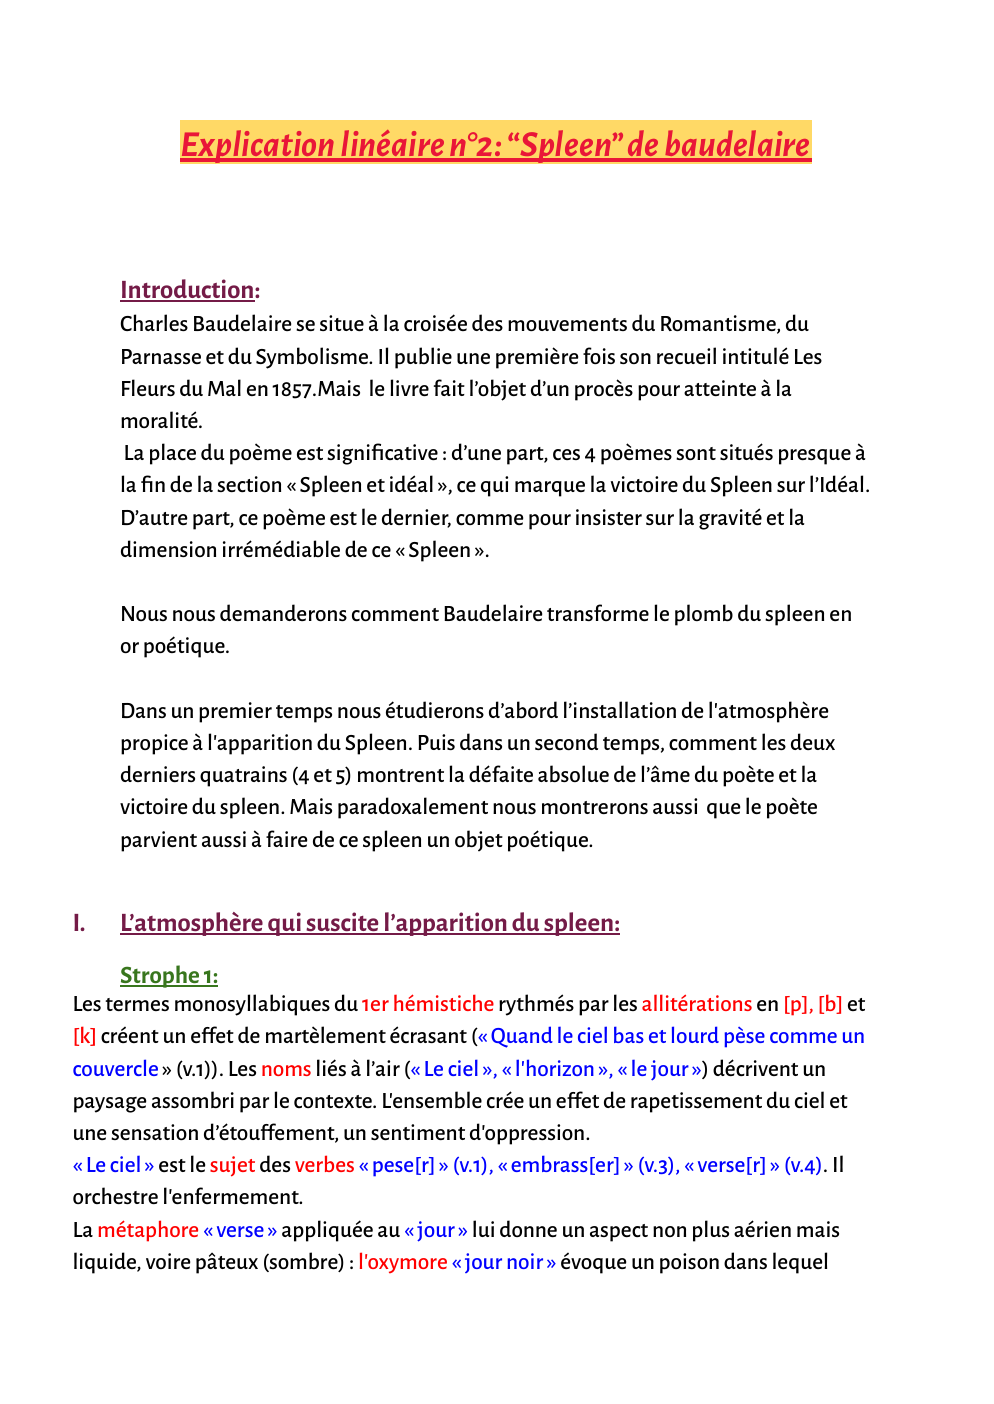 Prévisualisation du document Explication linéaire n°2: “Spleen” de Baudelaire